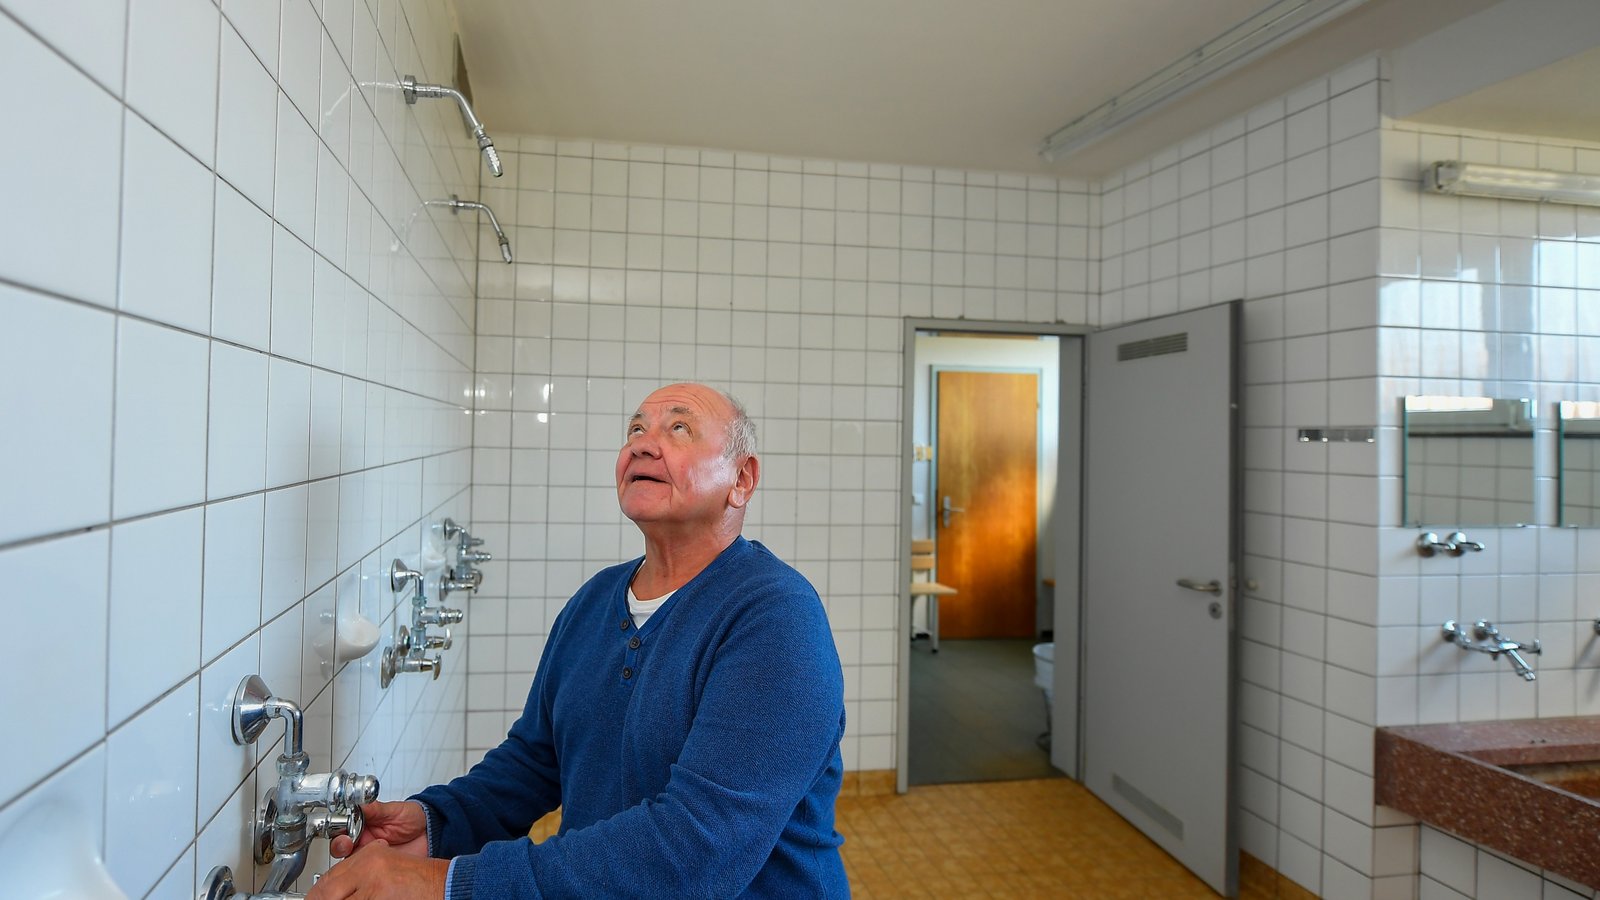 In den städtischen Sporthallen wie hier in Kleinsachsenheim kann nur noch kalt geduscht werden. Weil viele Sportler nun zu Hause duschen, wird in den Hallen viel Energie gespart.  Foto: Kalb